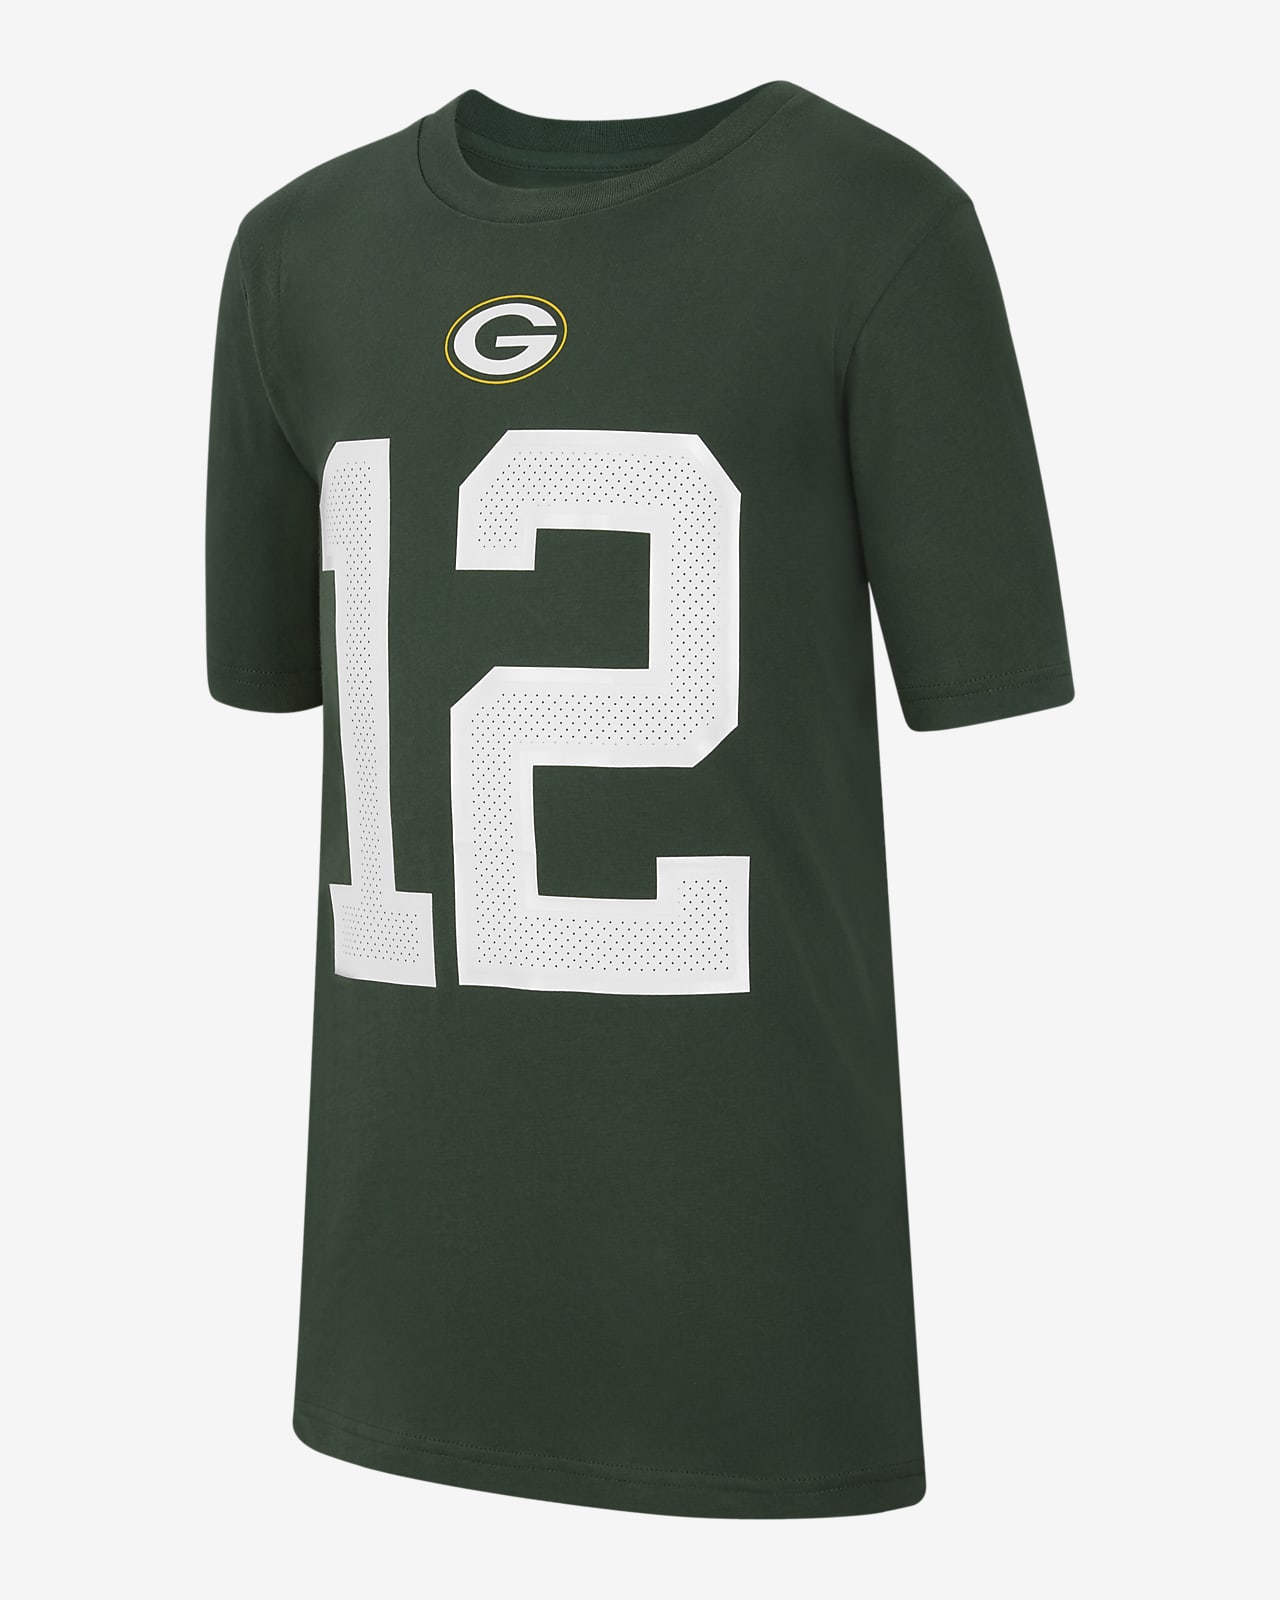 Nike (NFL Green Bay Packers) Camiseta - Niño/a